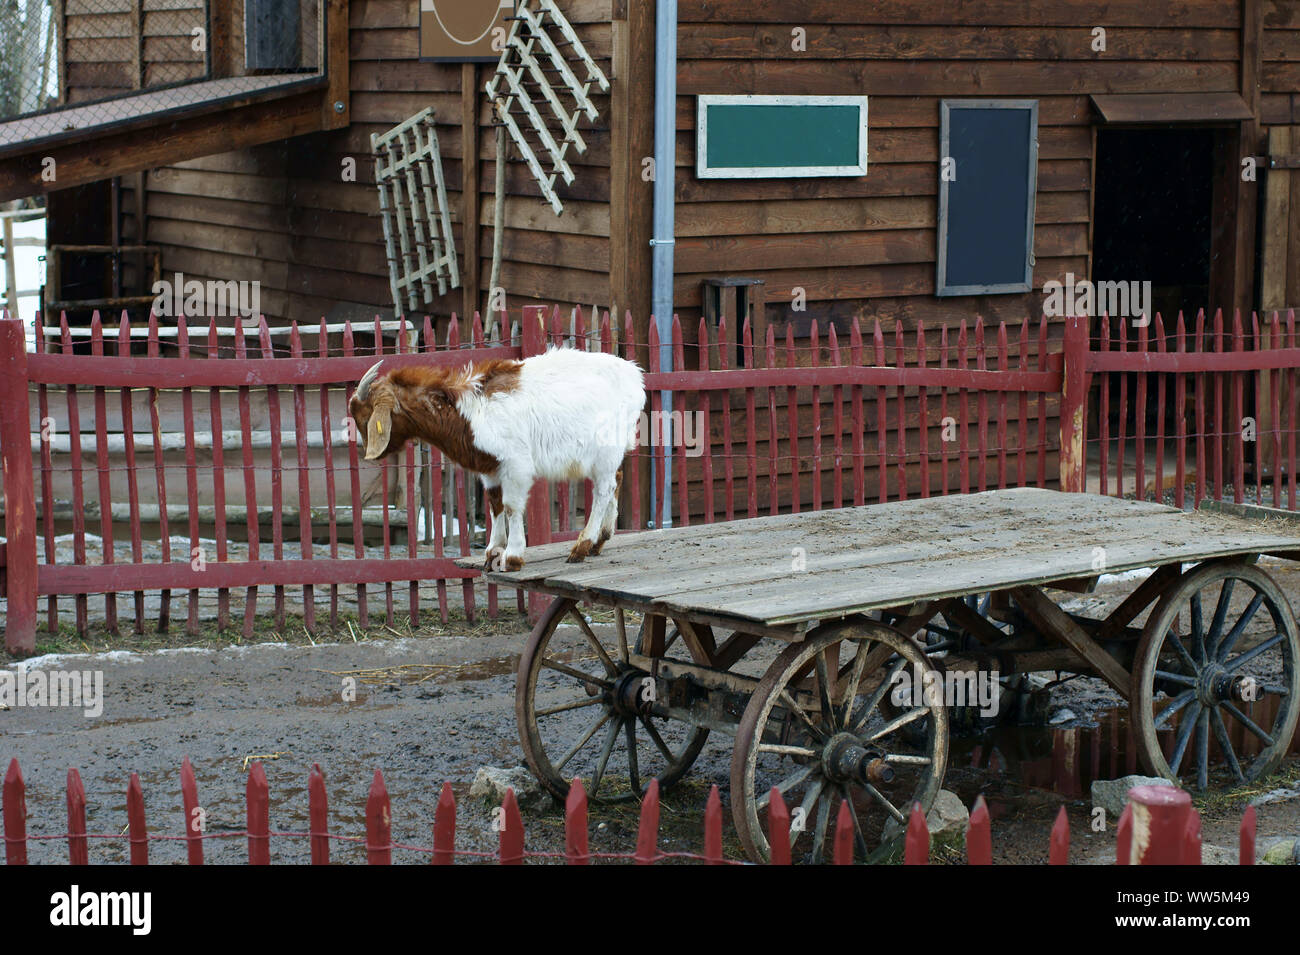 Fotografie einer Ziege in einem eingezäunten Gehege von einem Bauernhof, Stockfoto